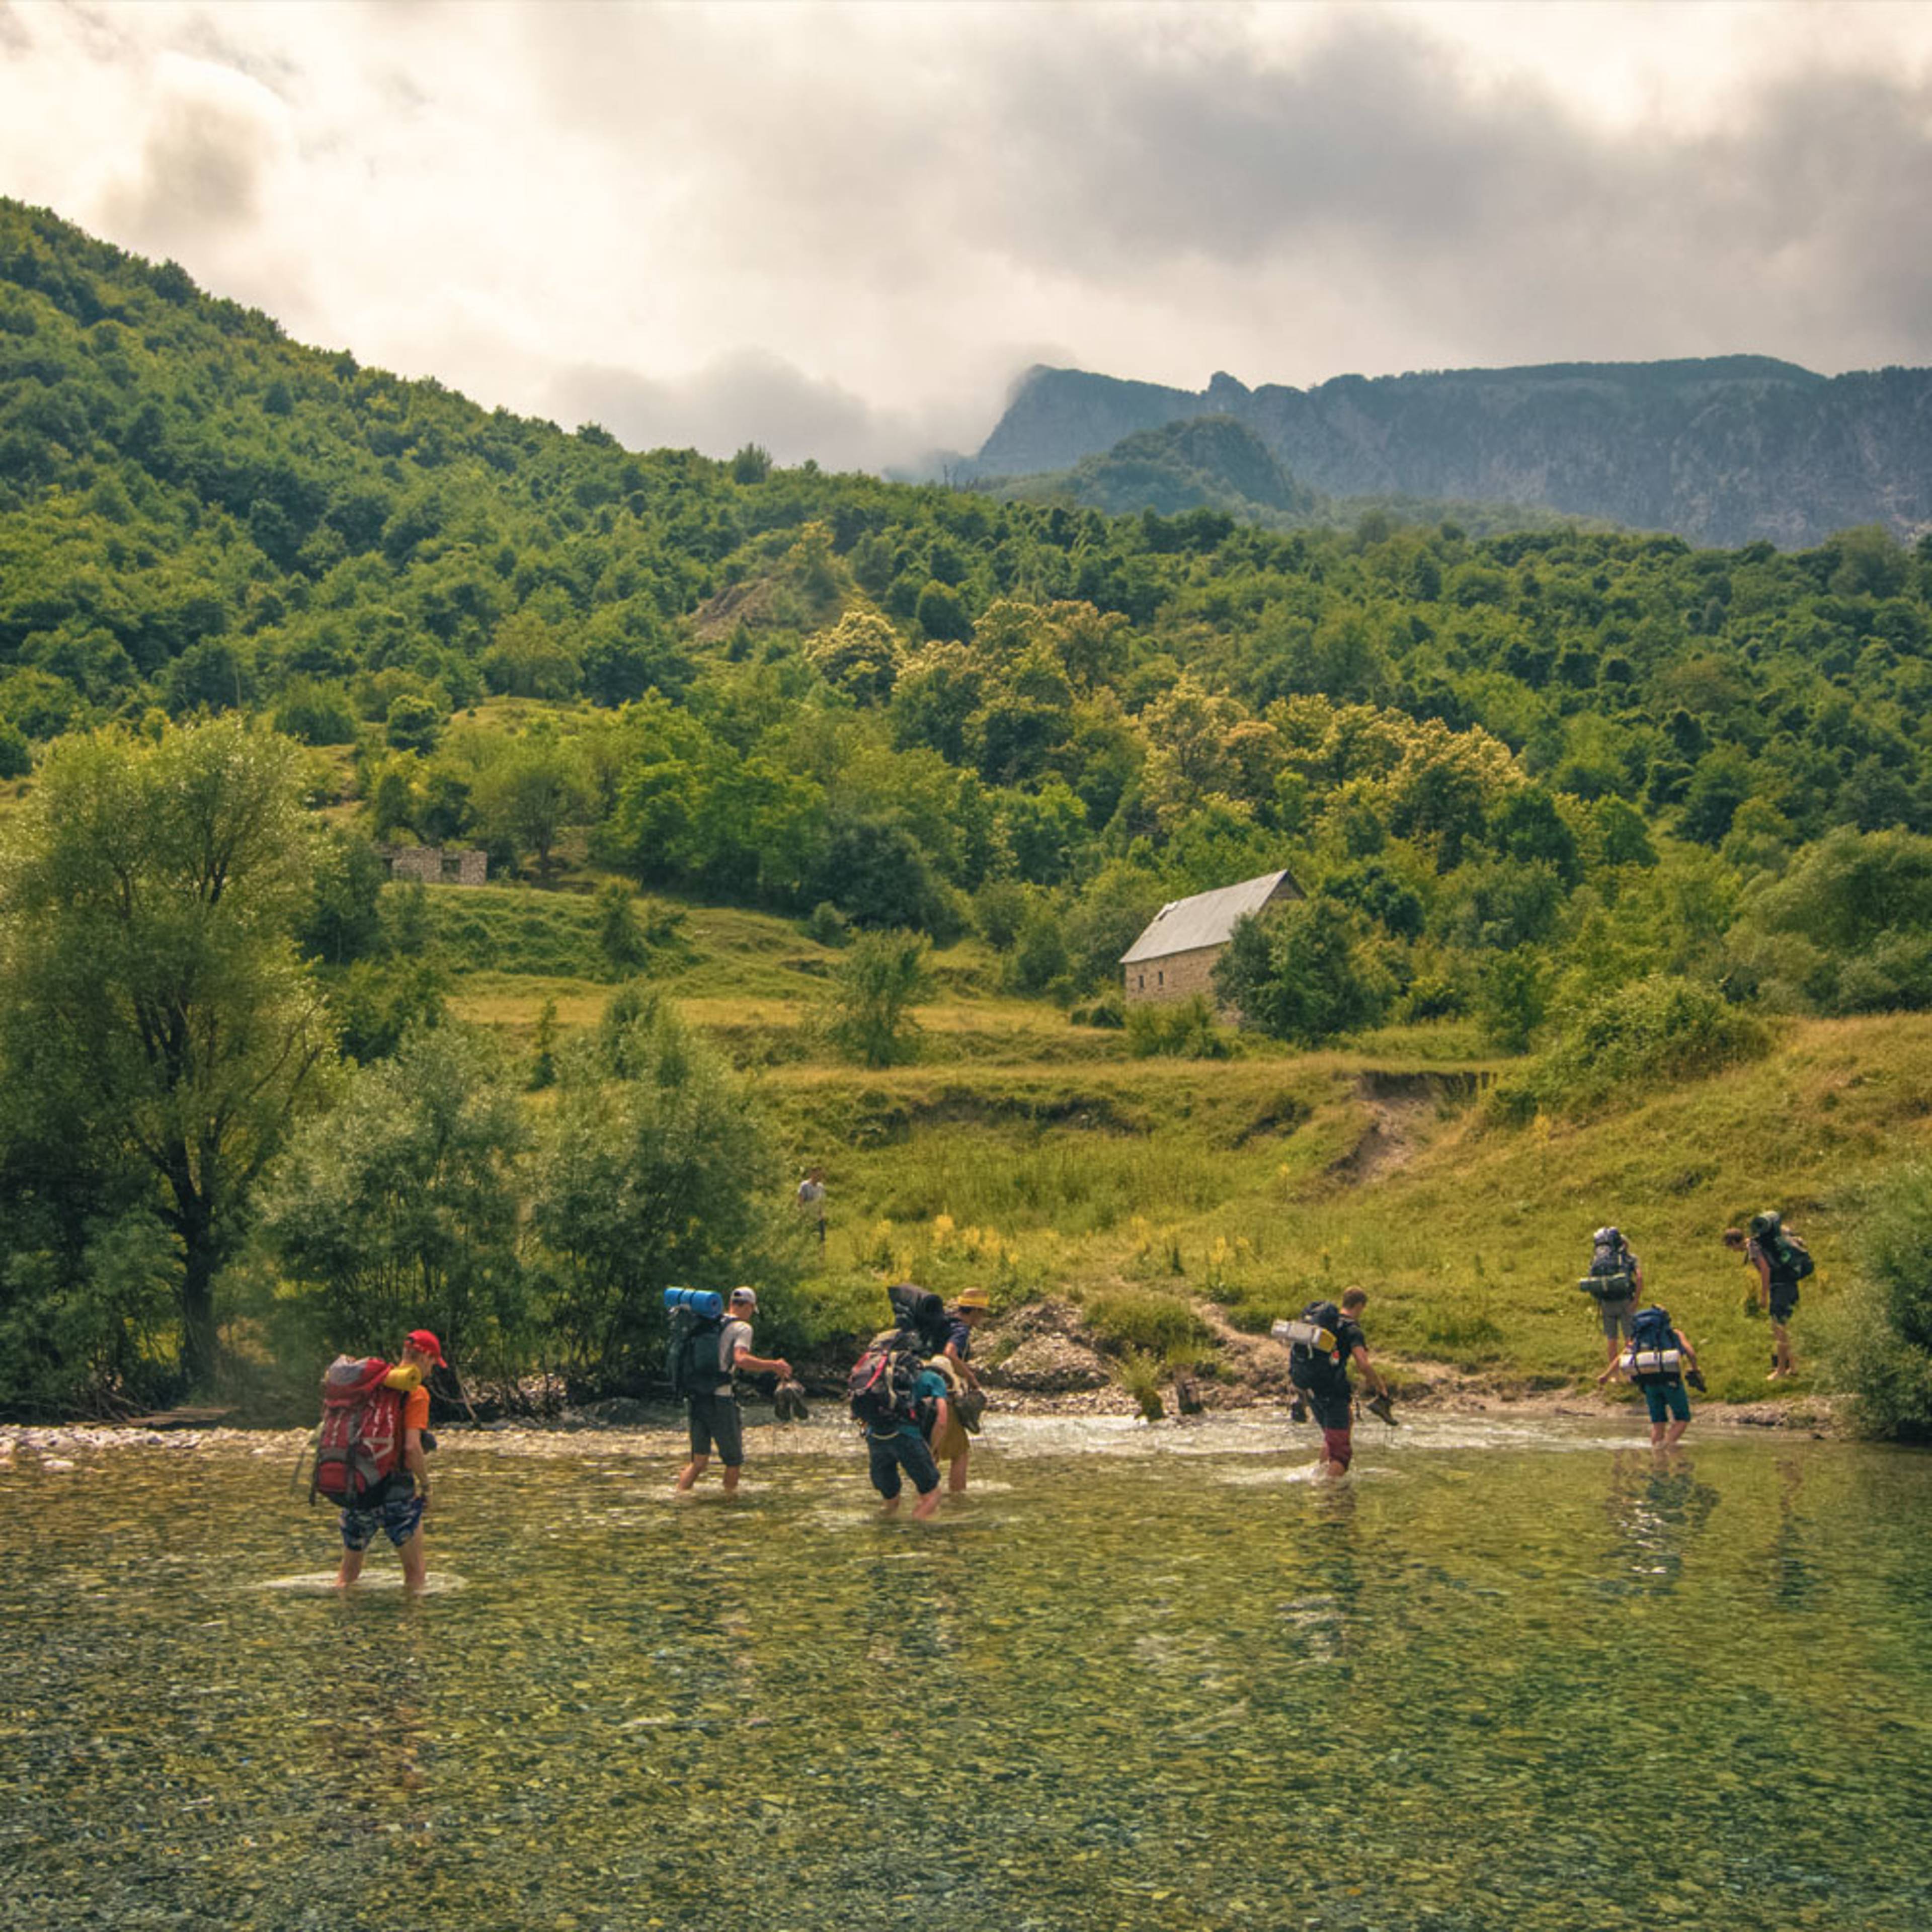 Crea il tuo viaggio su misura e unisciti a un gruppo in Albania